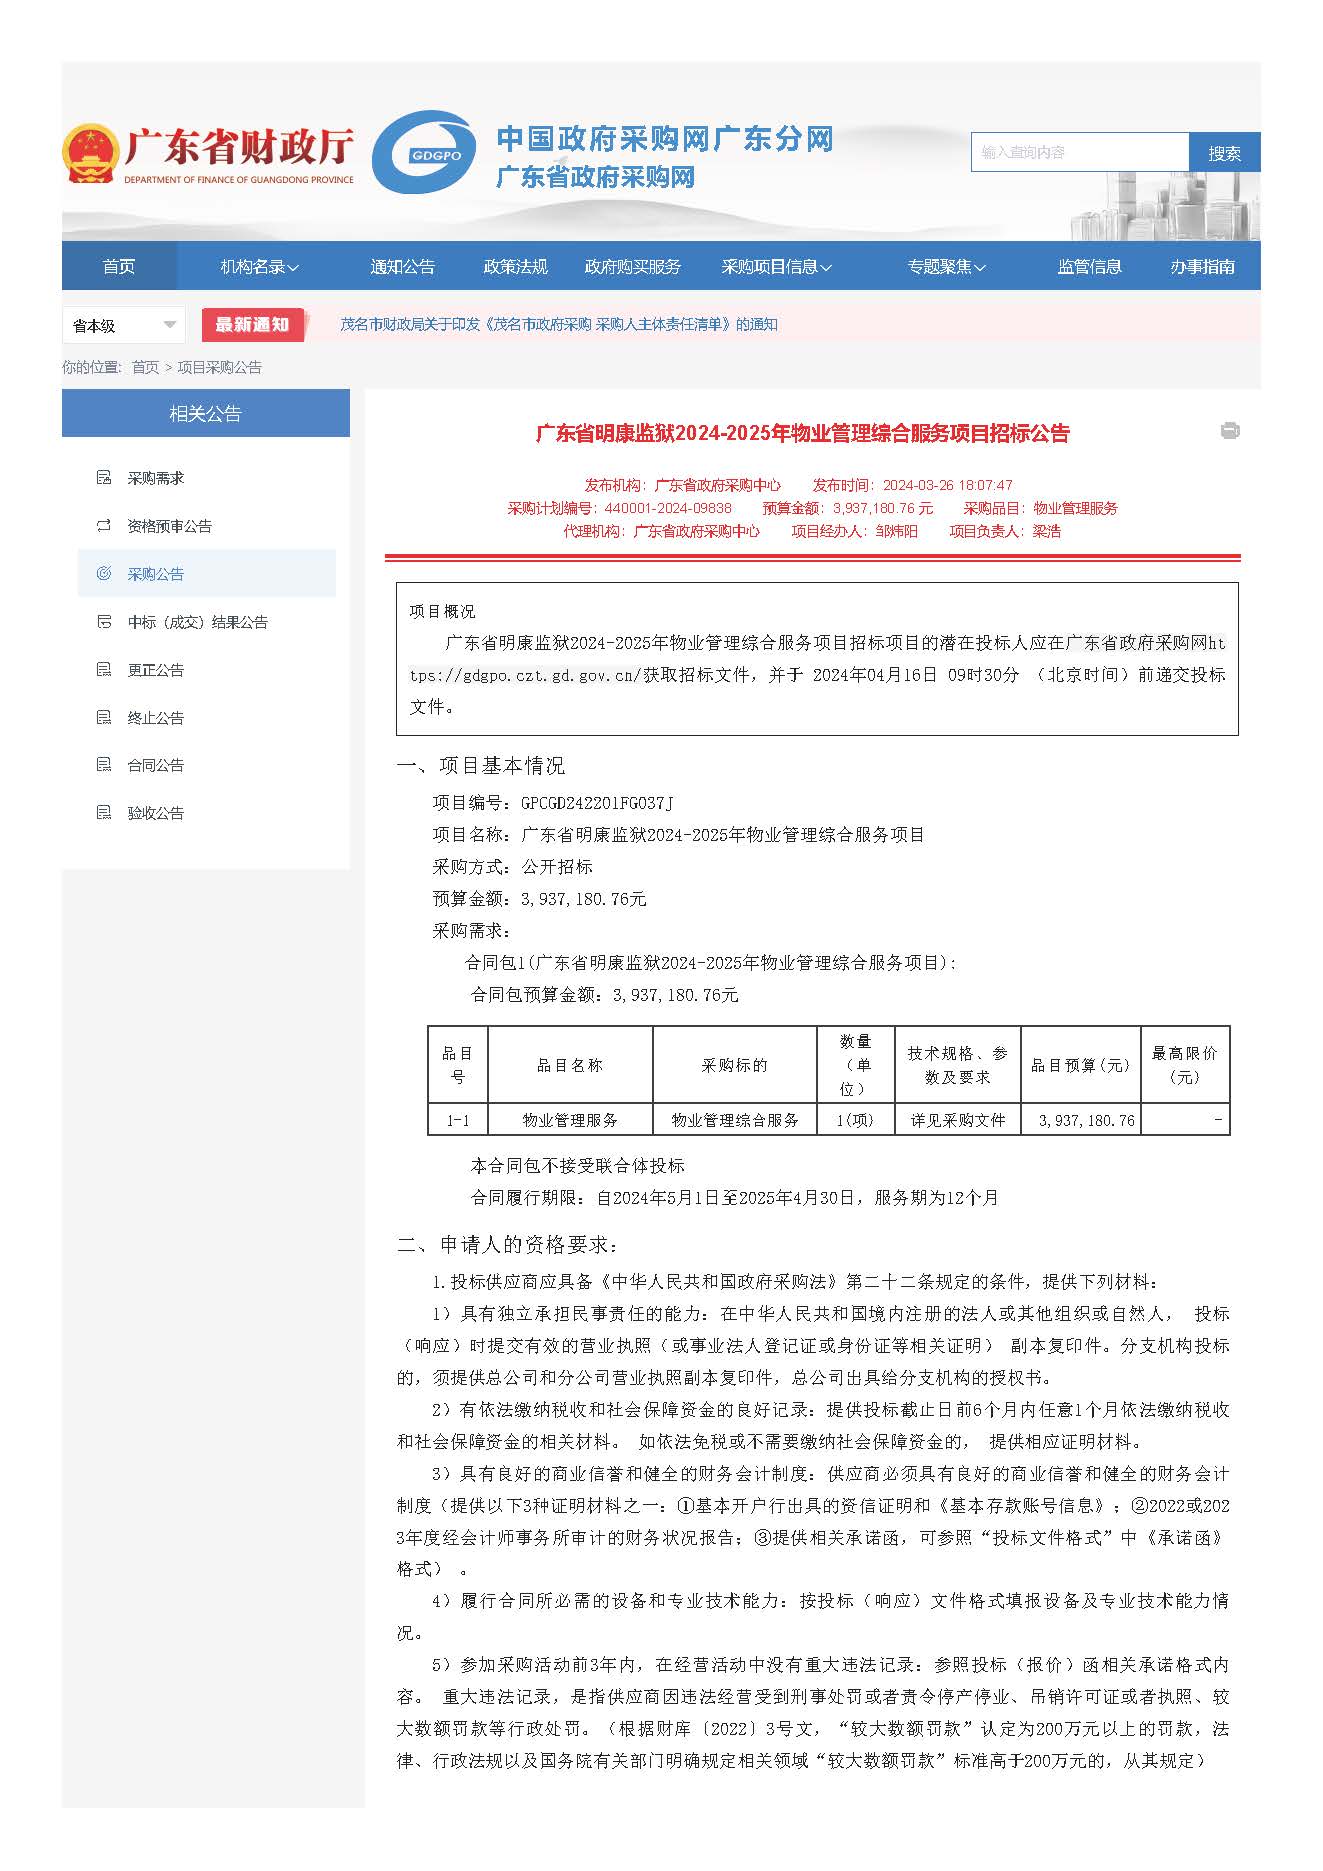 32.52广东省明康监狱2024-2025年物业管理综合服务项目招标公告_页面_1.jpg